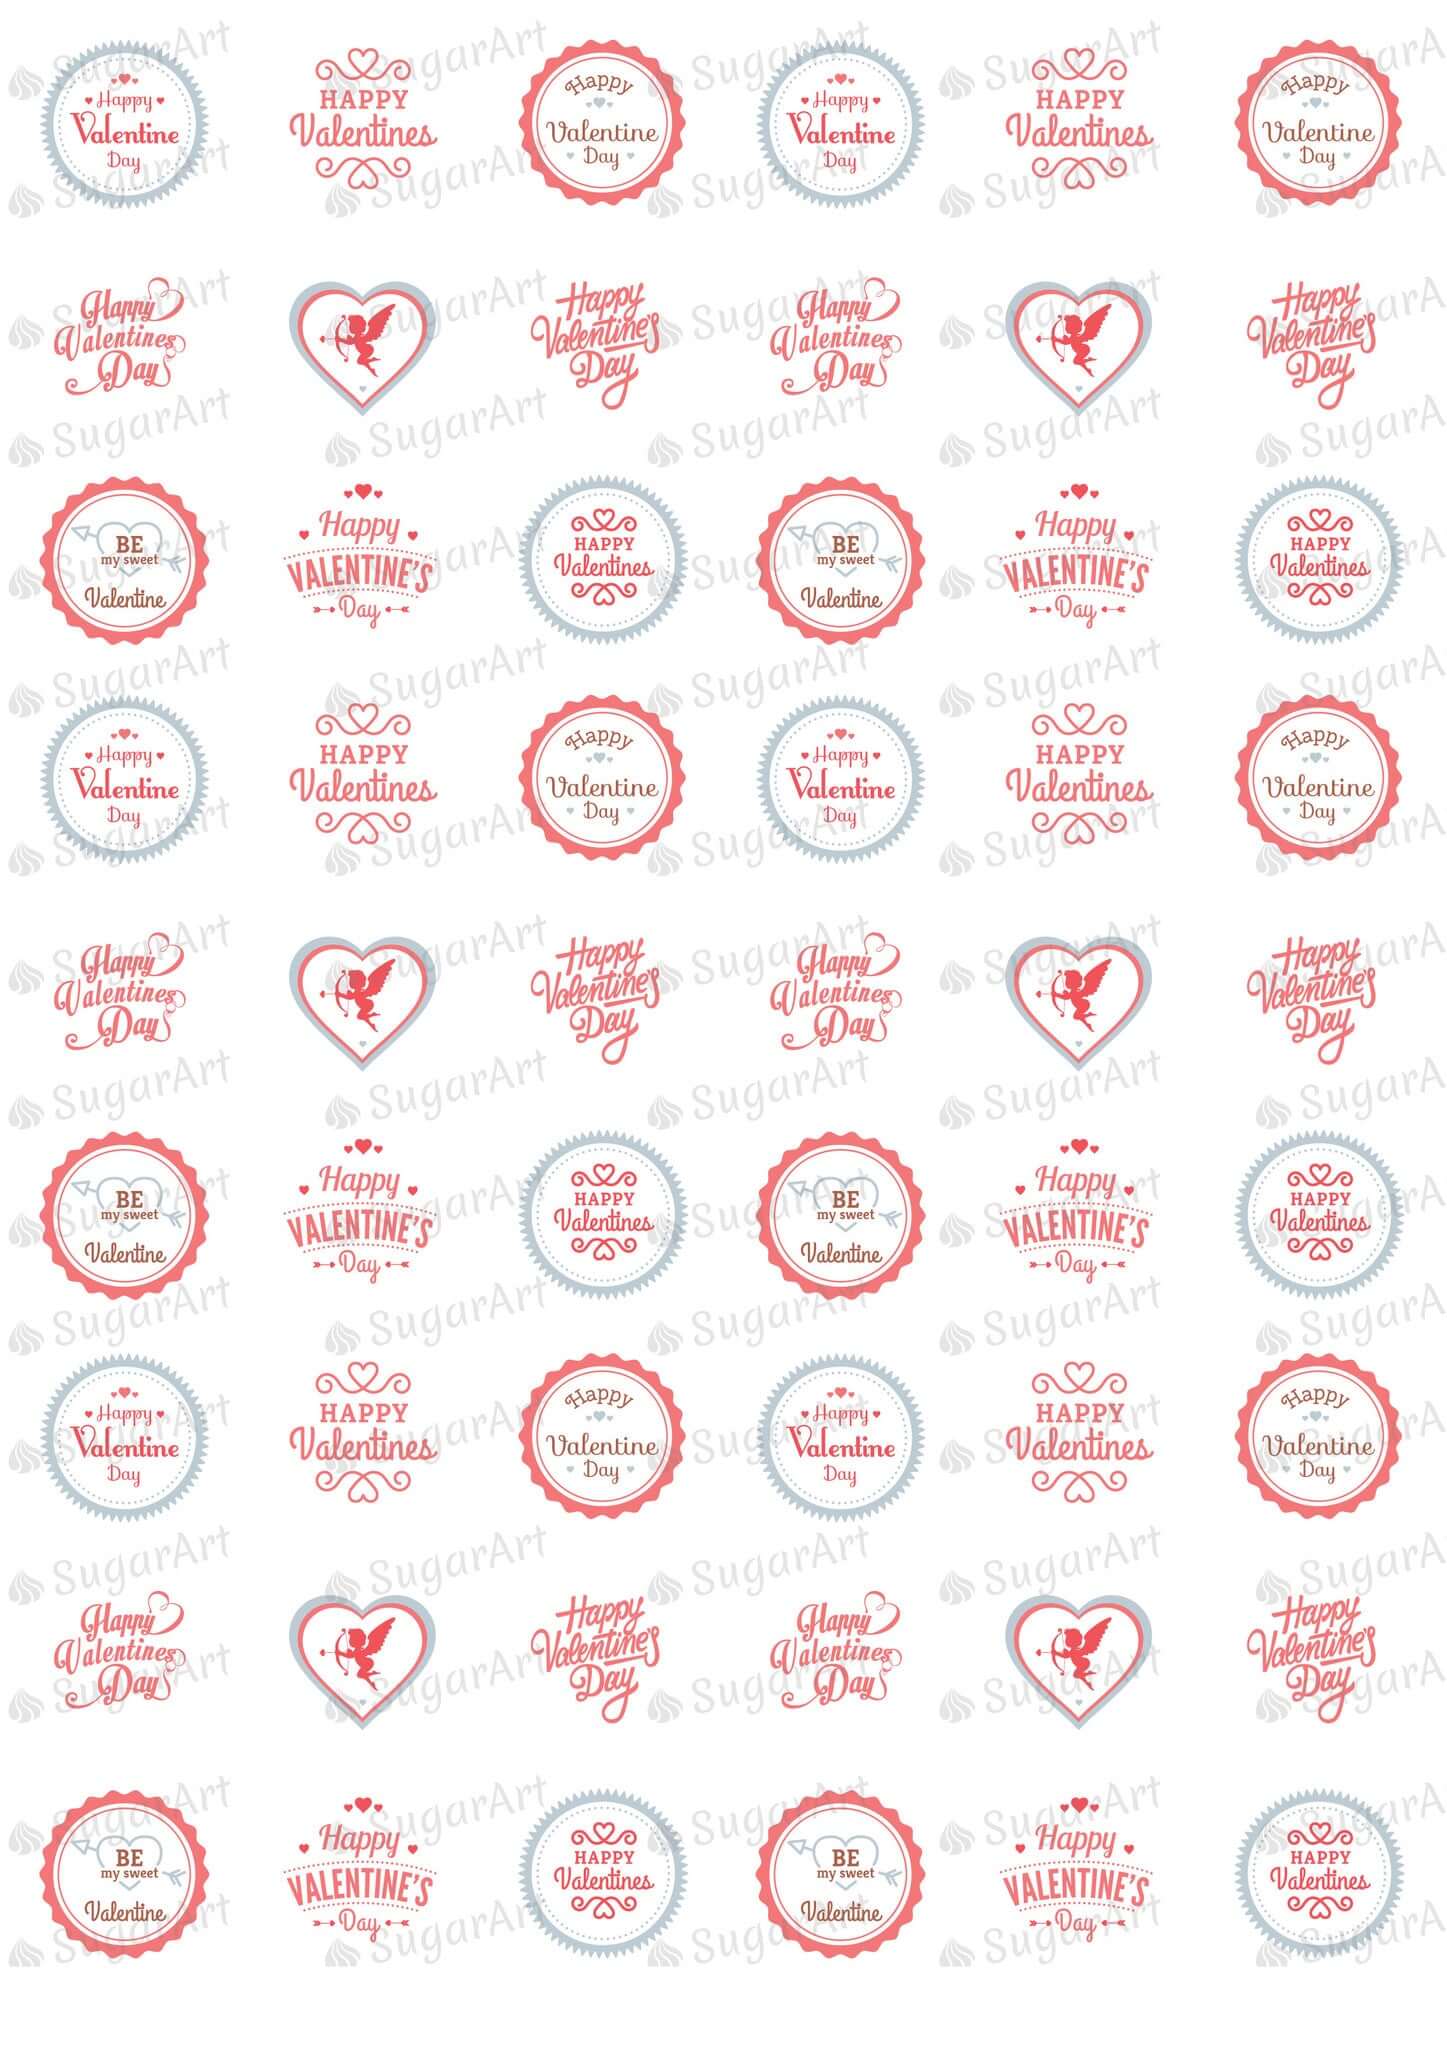 Happy Valentine Day - HSA014-Sugar Stamp sheets-Sugar Art